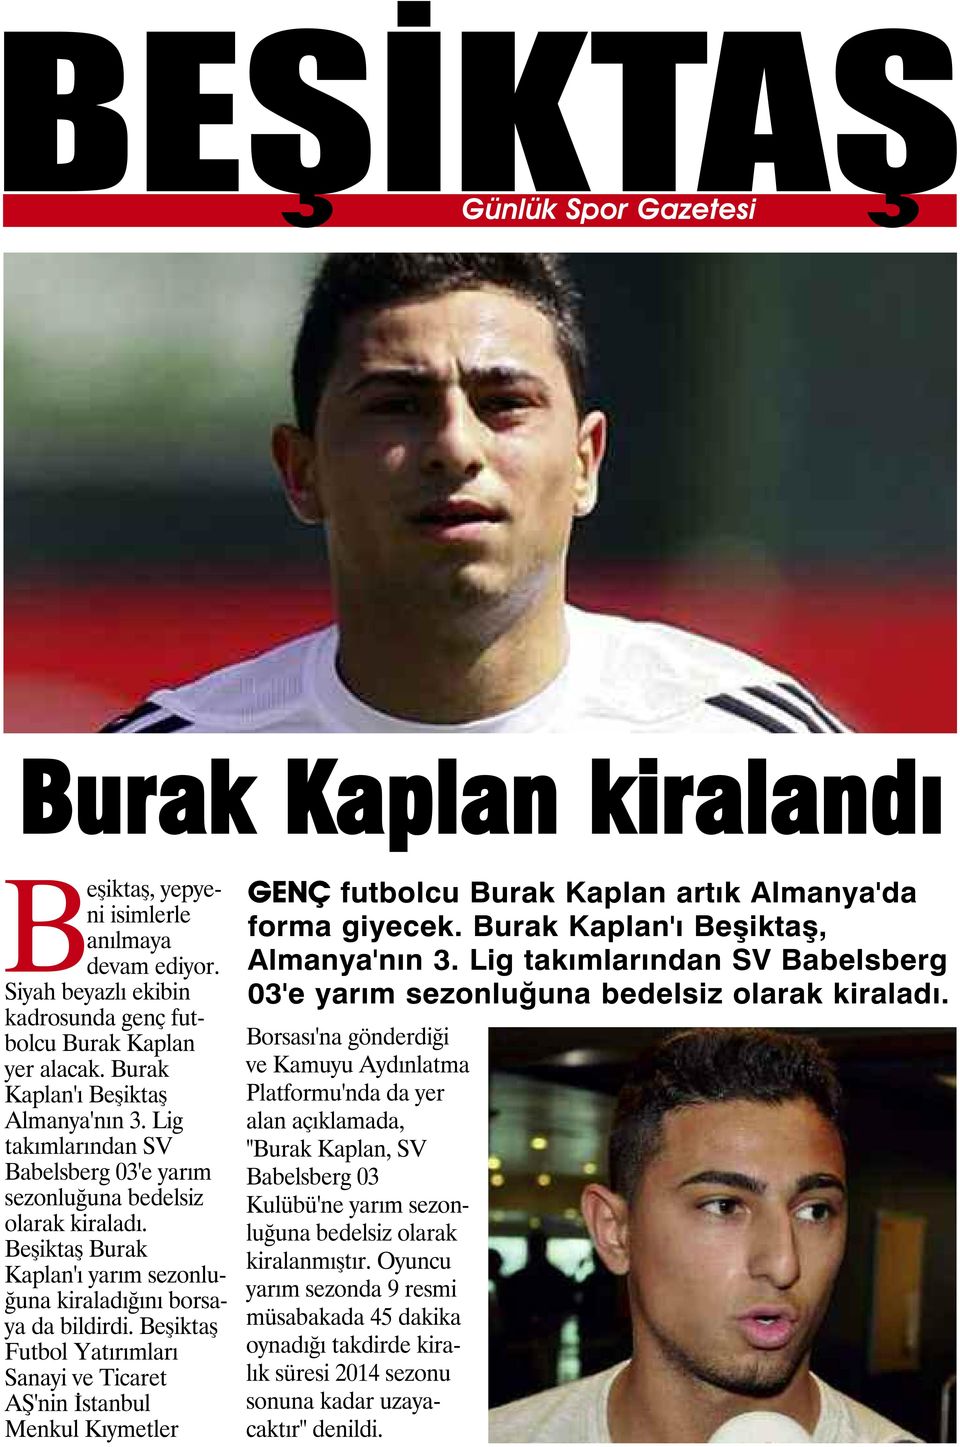 Beşiktaş Futbol Yatırımları Sanayi ve Ticaret AŞ'nin İstanbul Menkul Kıymetler GENÇ futbolcu Burak Kaplan artık Almanya'da forma giyecek. Burak Kaplan'ı Beşiktaş, Almanya'nın 3.